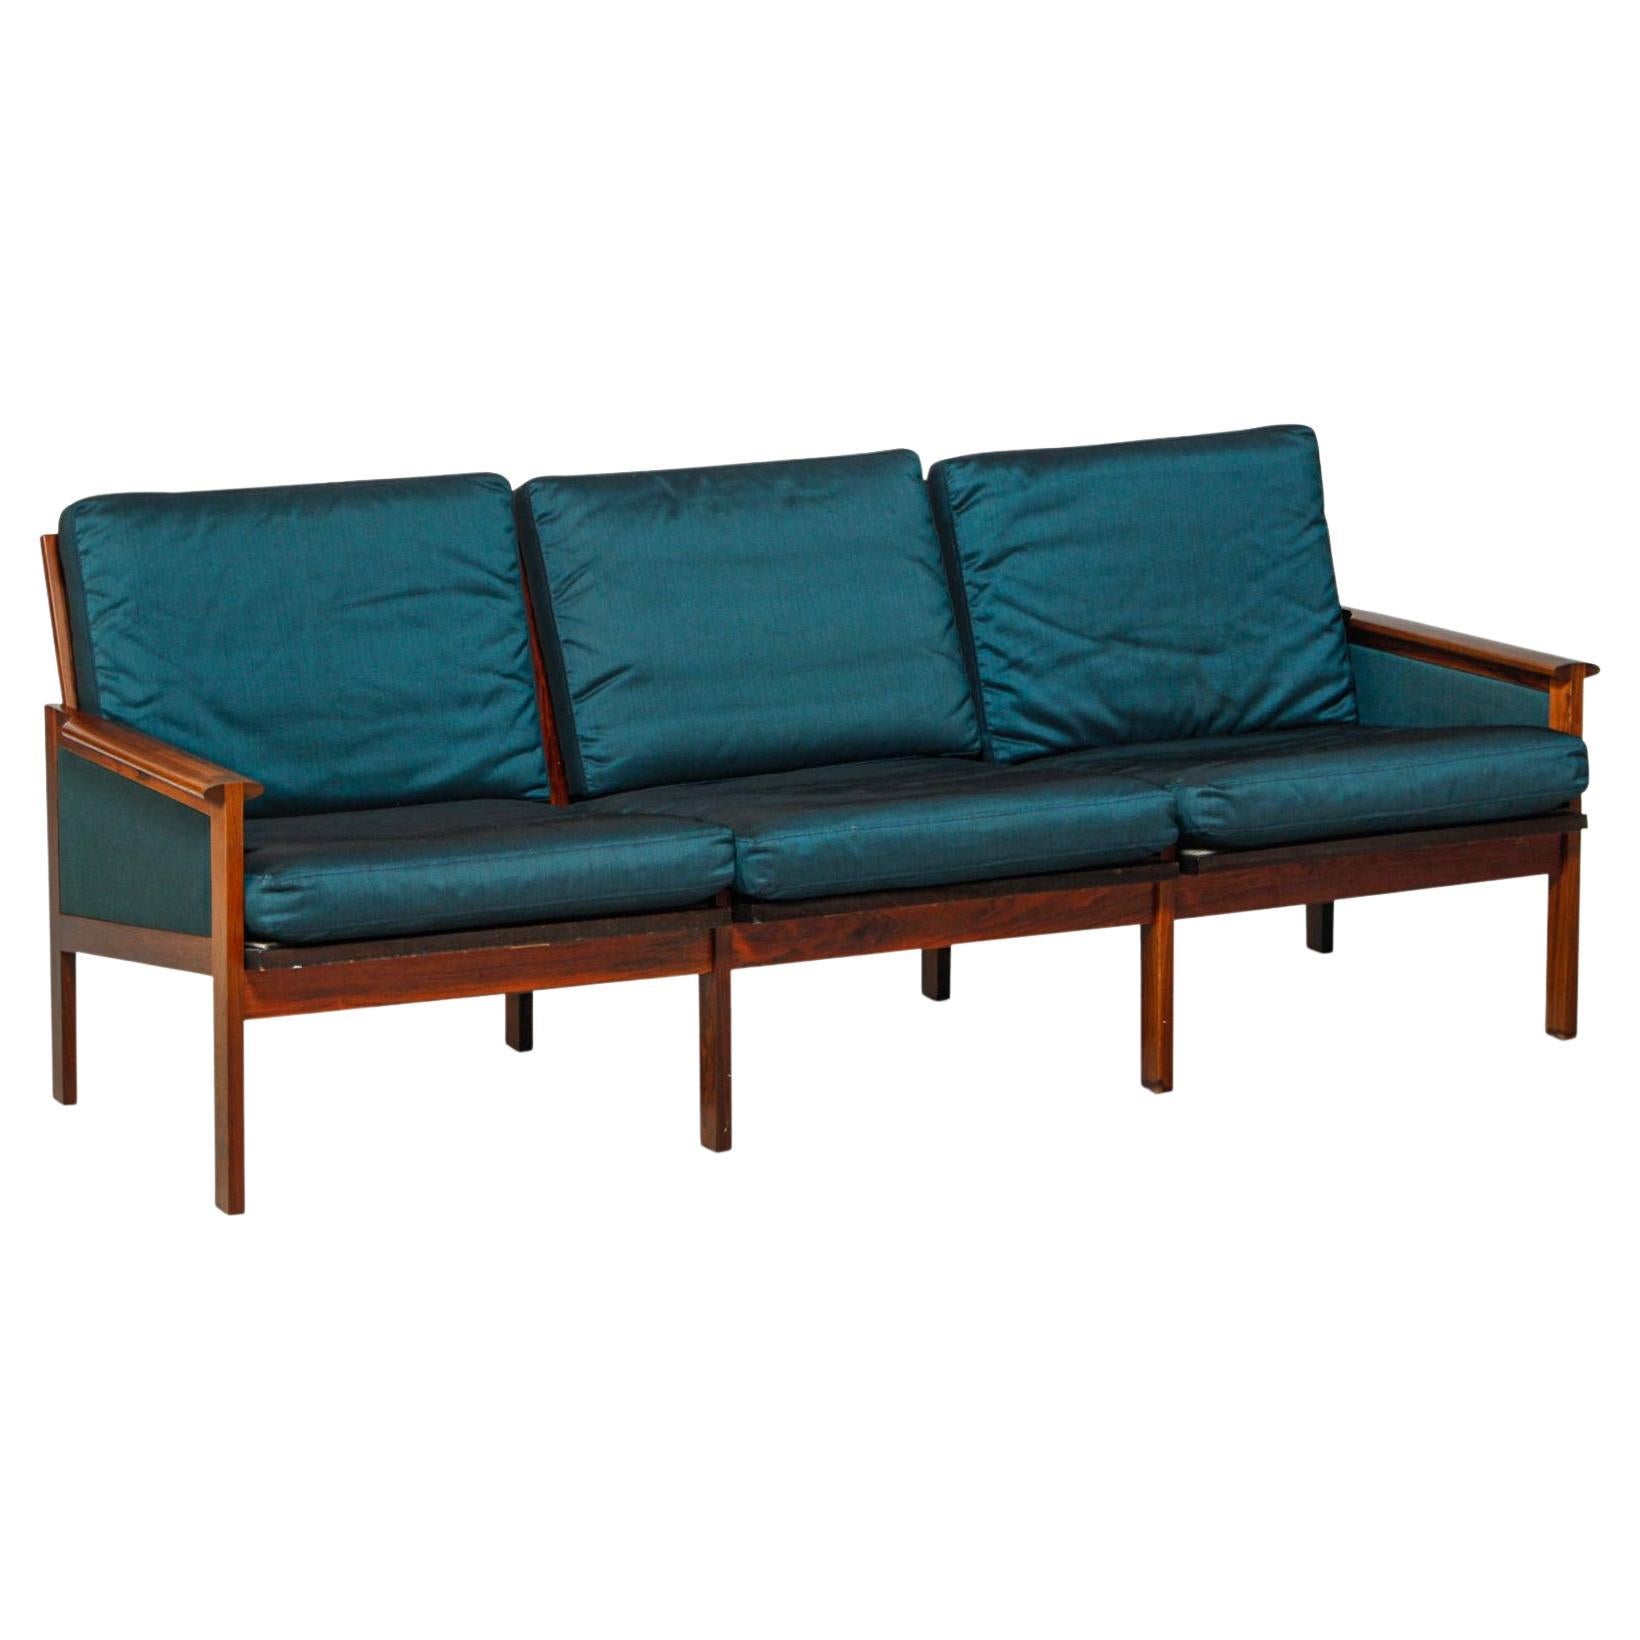 Dreisitziges Sofa "Capella" von Illum Wikkels aus Palisanderholz und blauer Haifischhautwolle